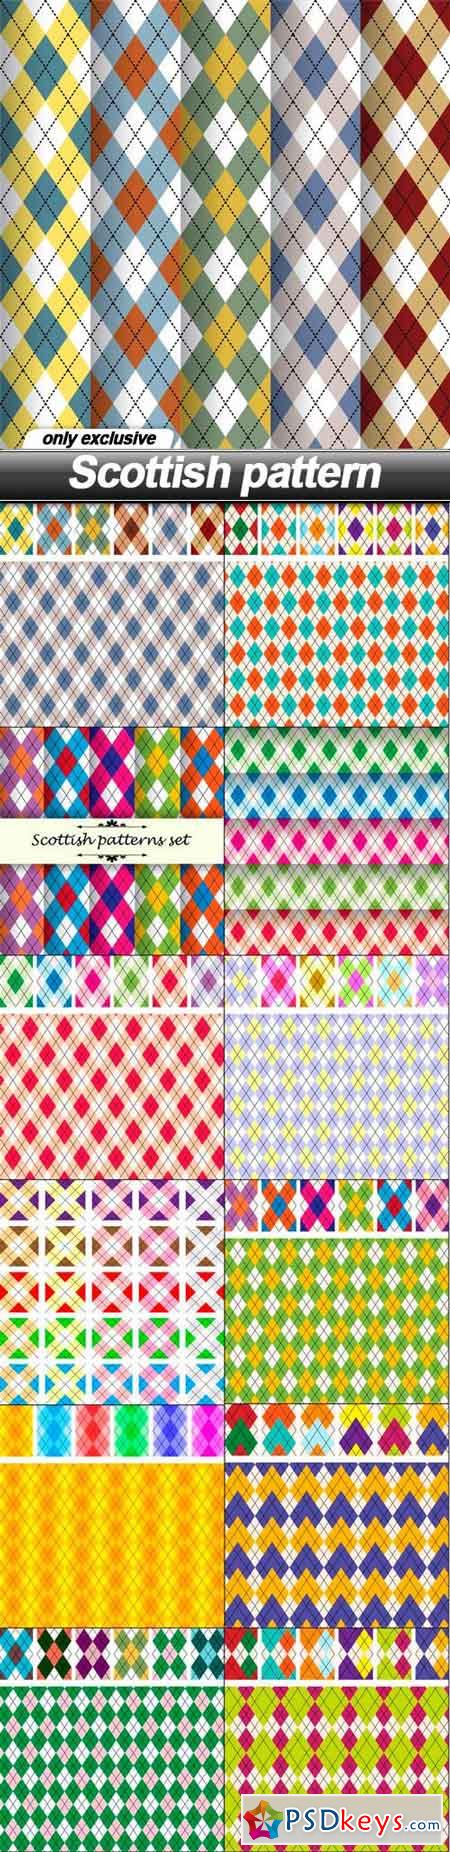 Scottish pattern - 13 EPS